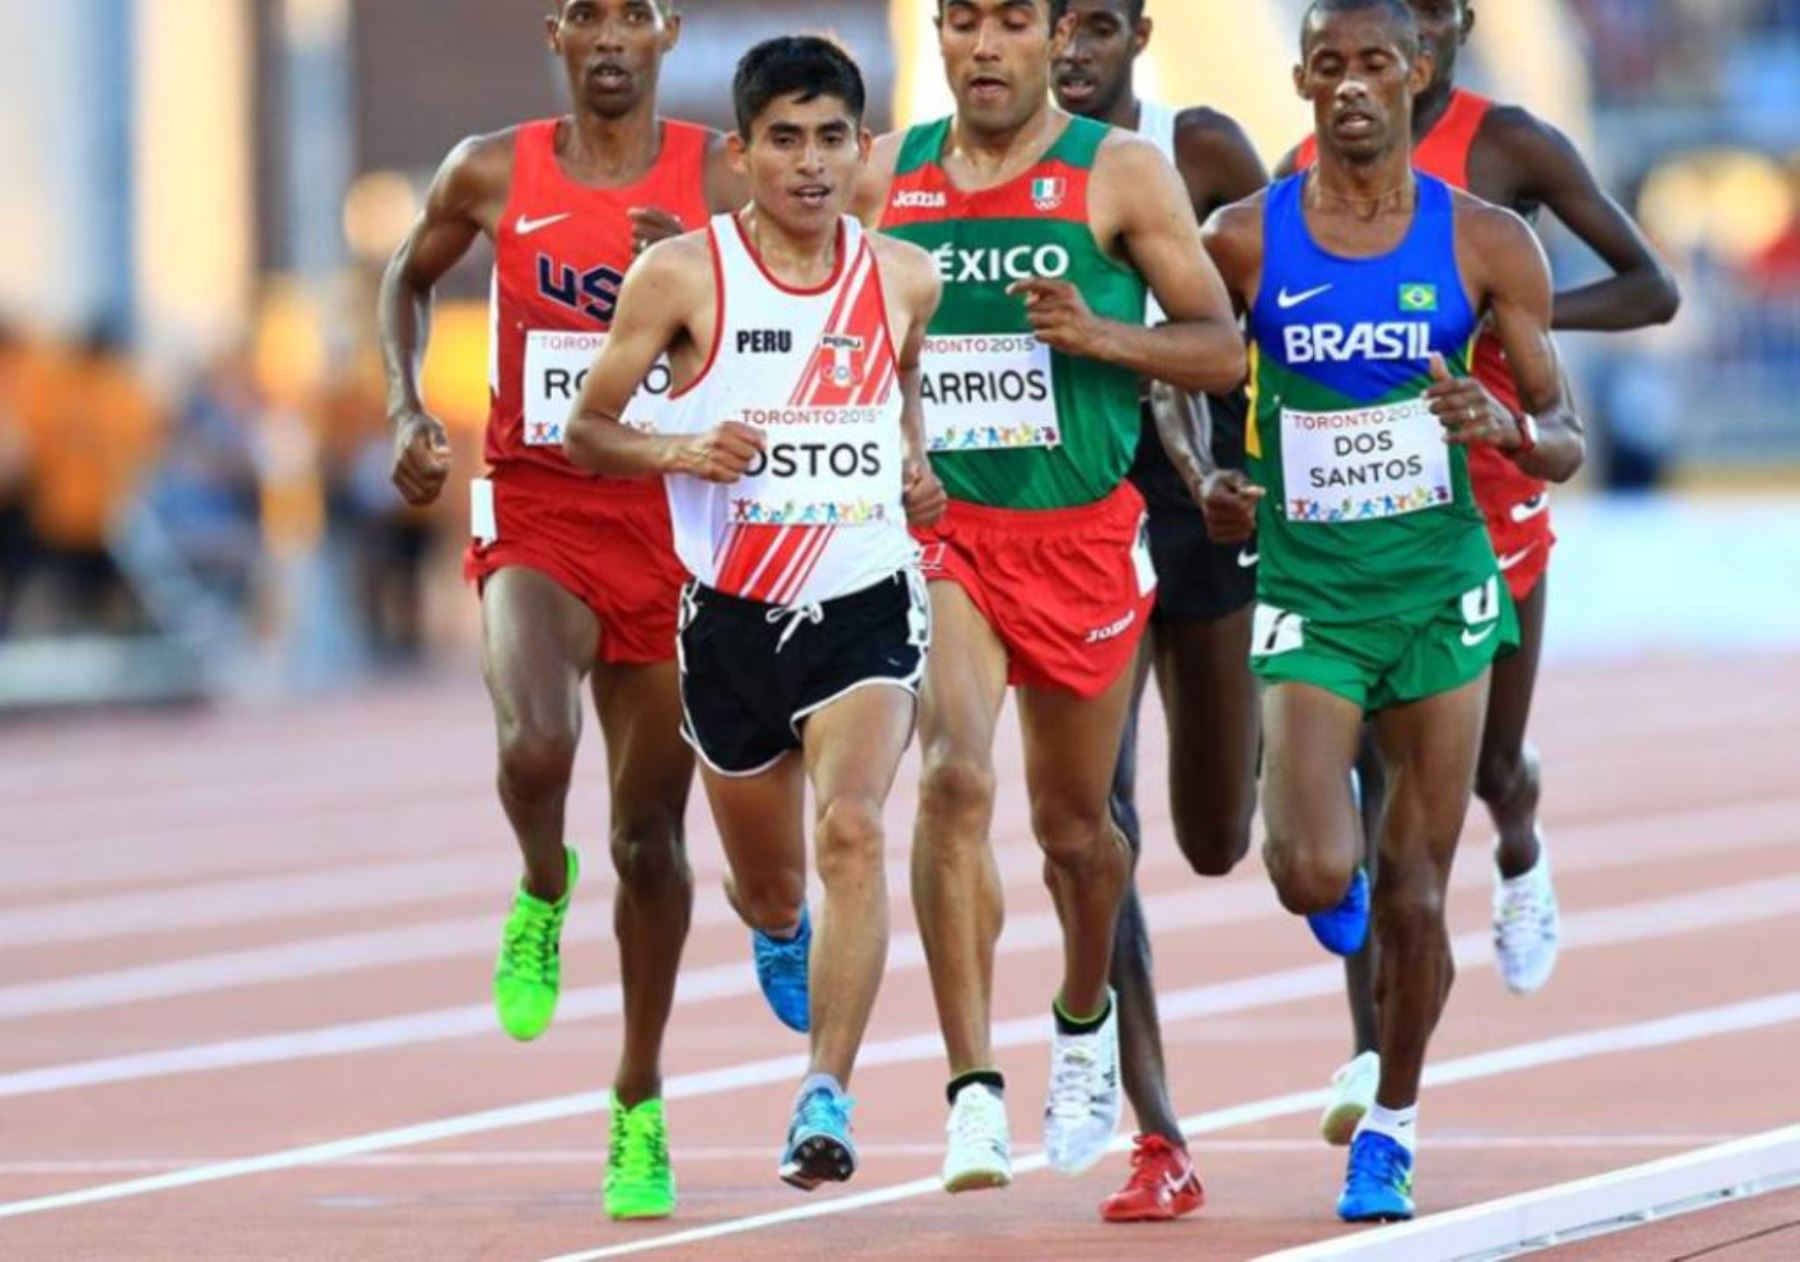 Fondista peruano Luis Ostos competirá en los Juegos Olímpicos de Río 2016. Foto: Cortesía.